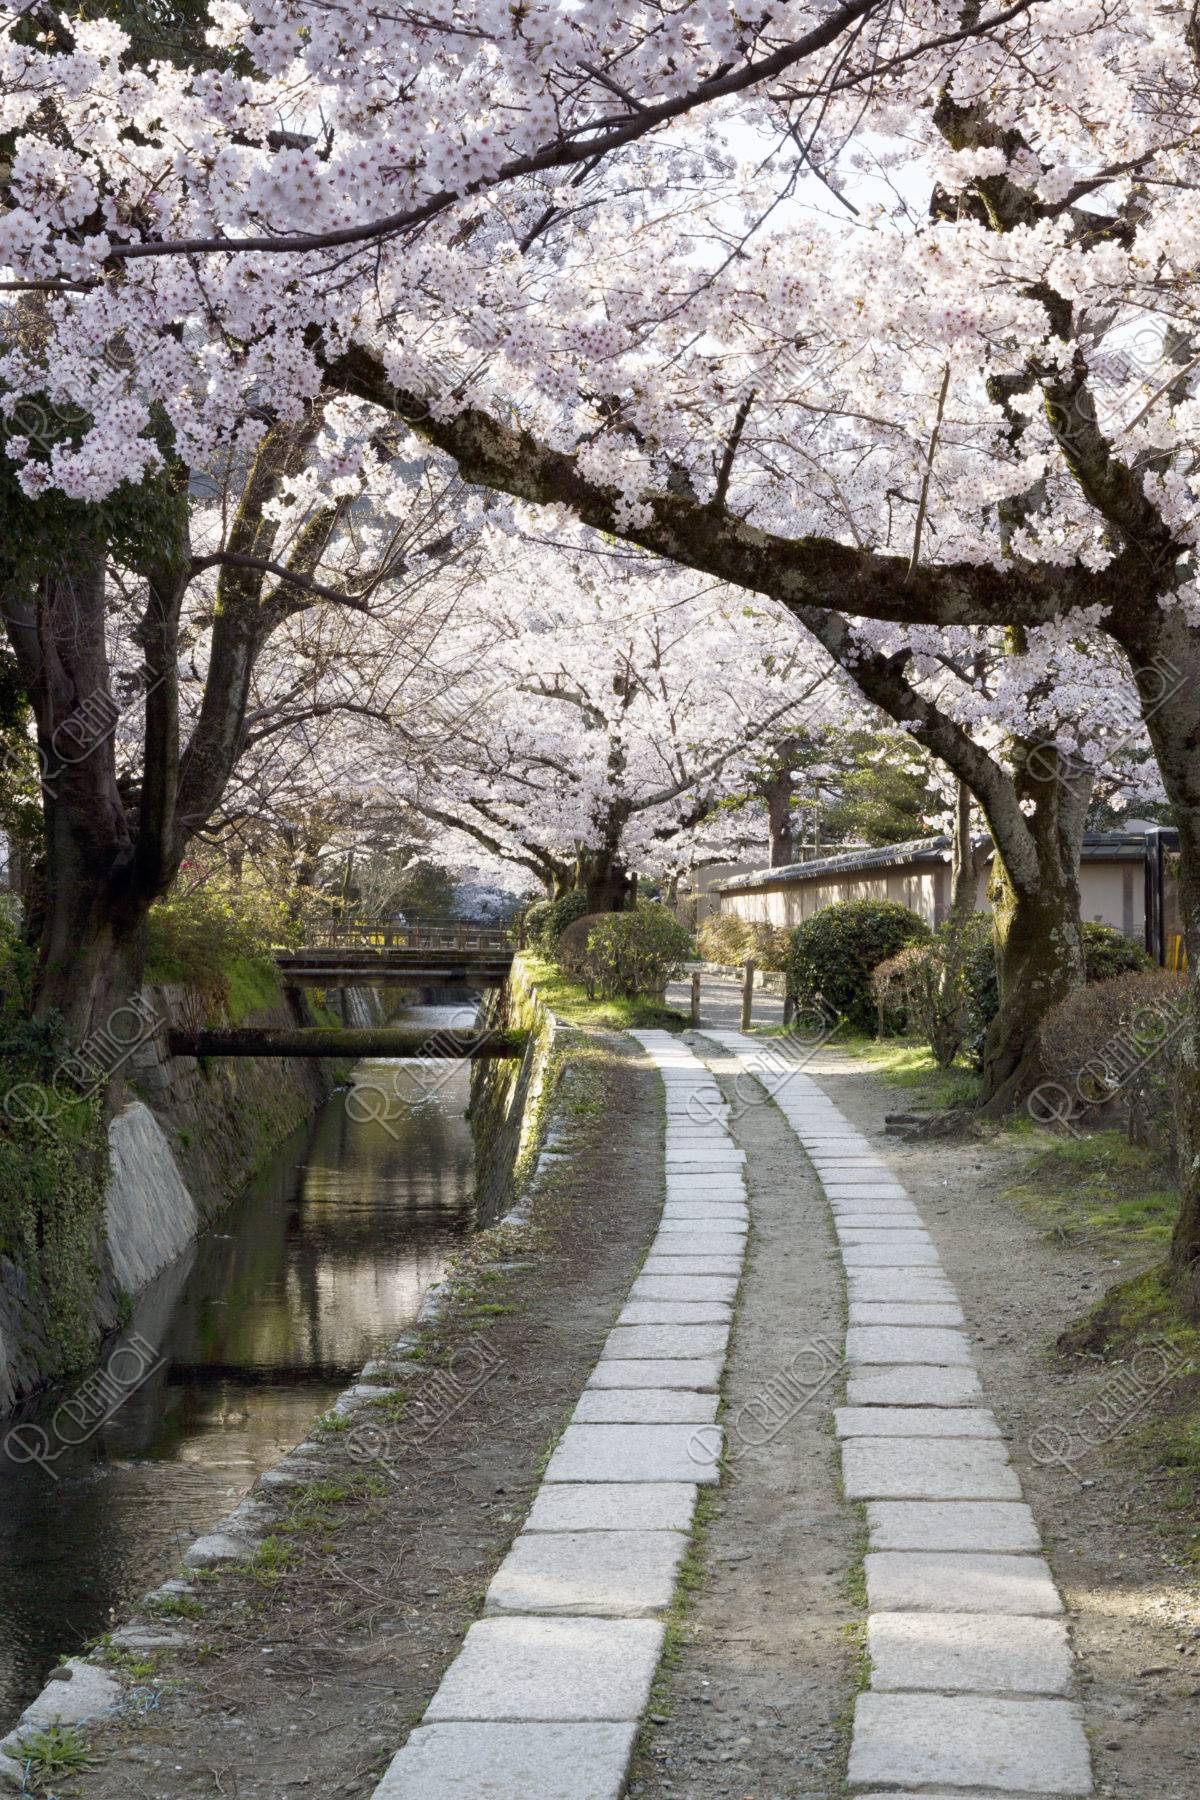 哲学の道の写真 - 京都の観光地 - 京都観光ネット